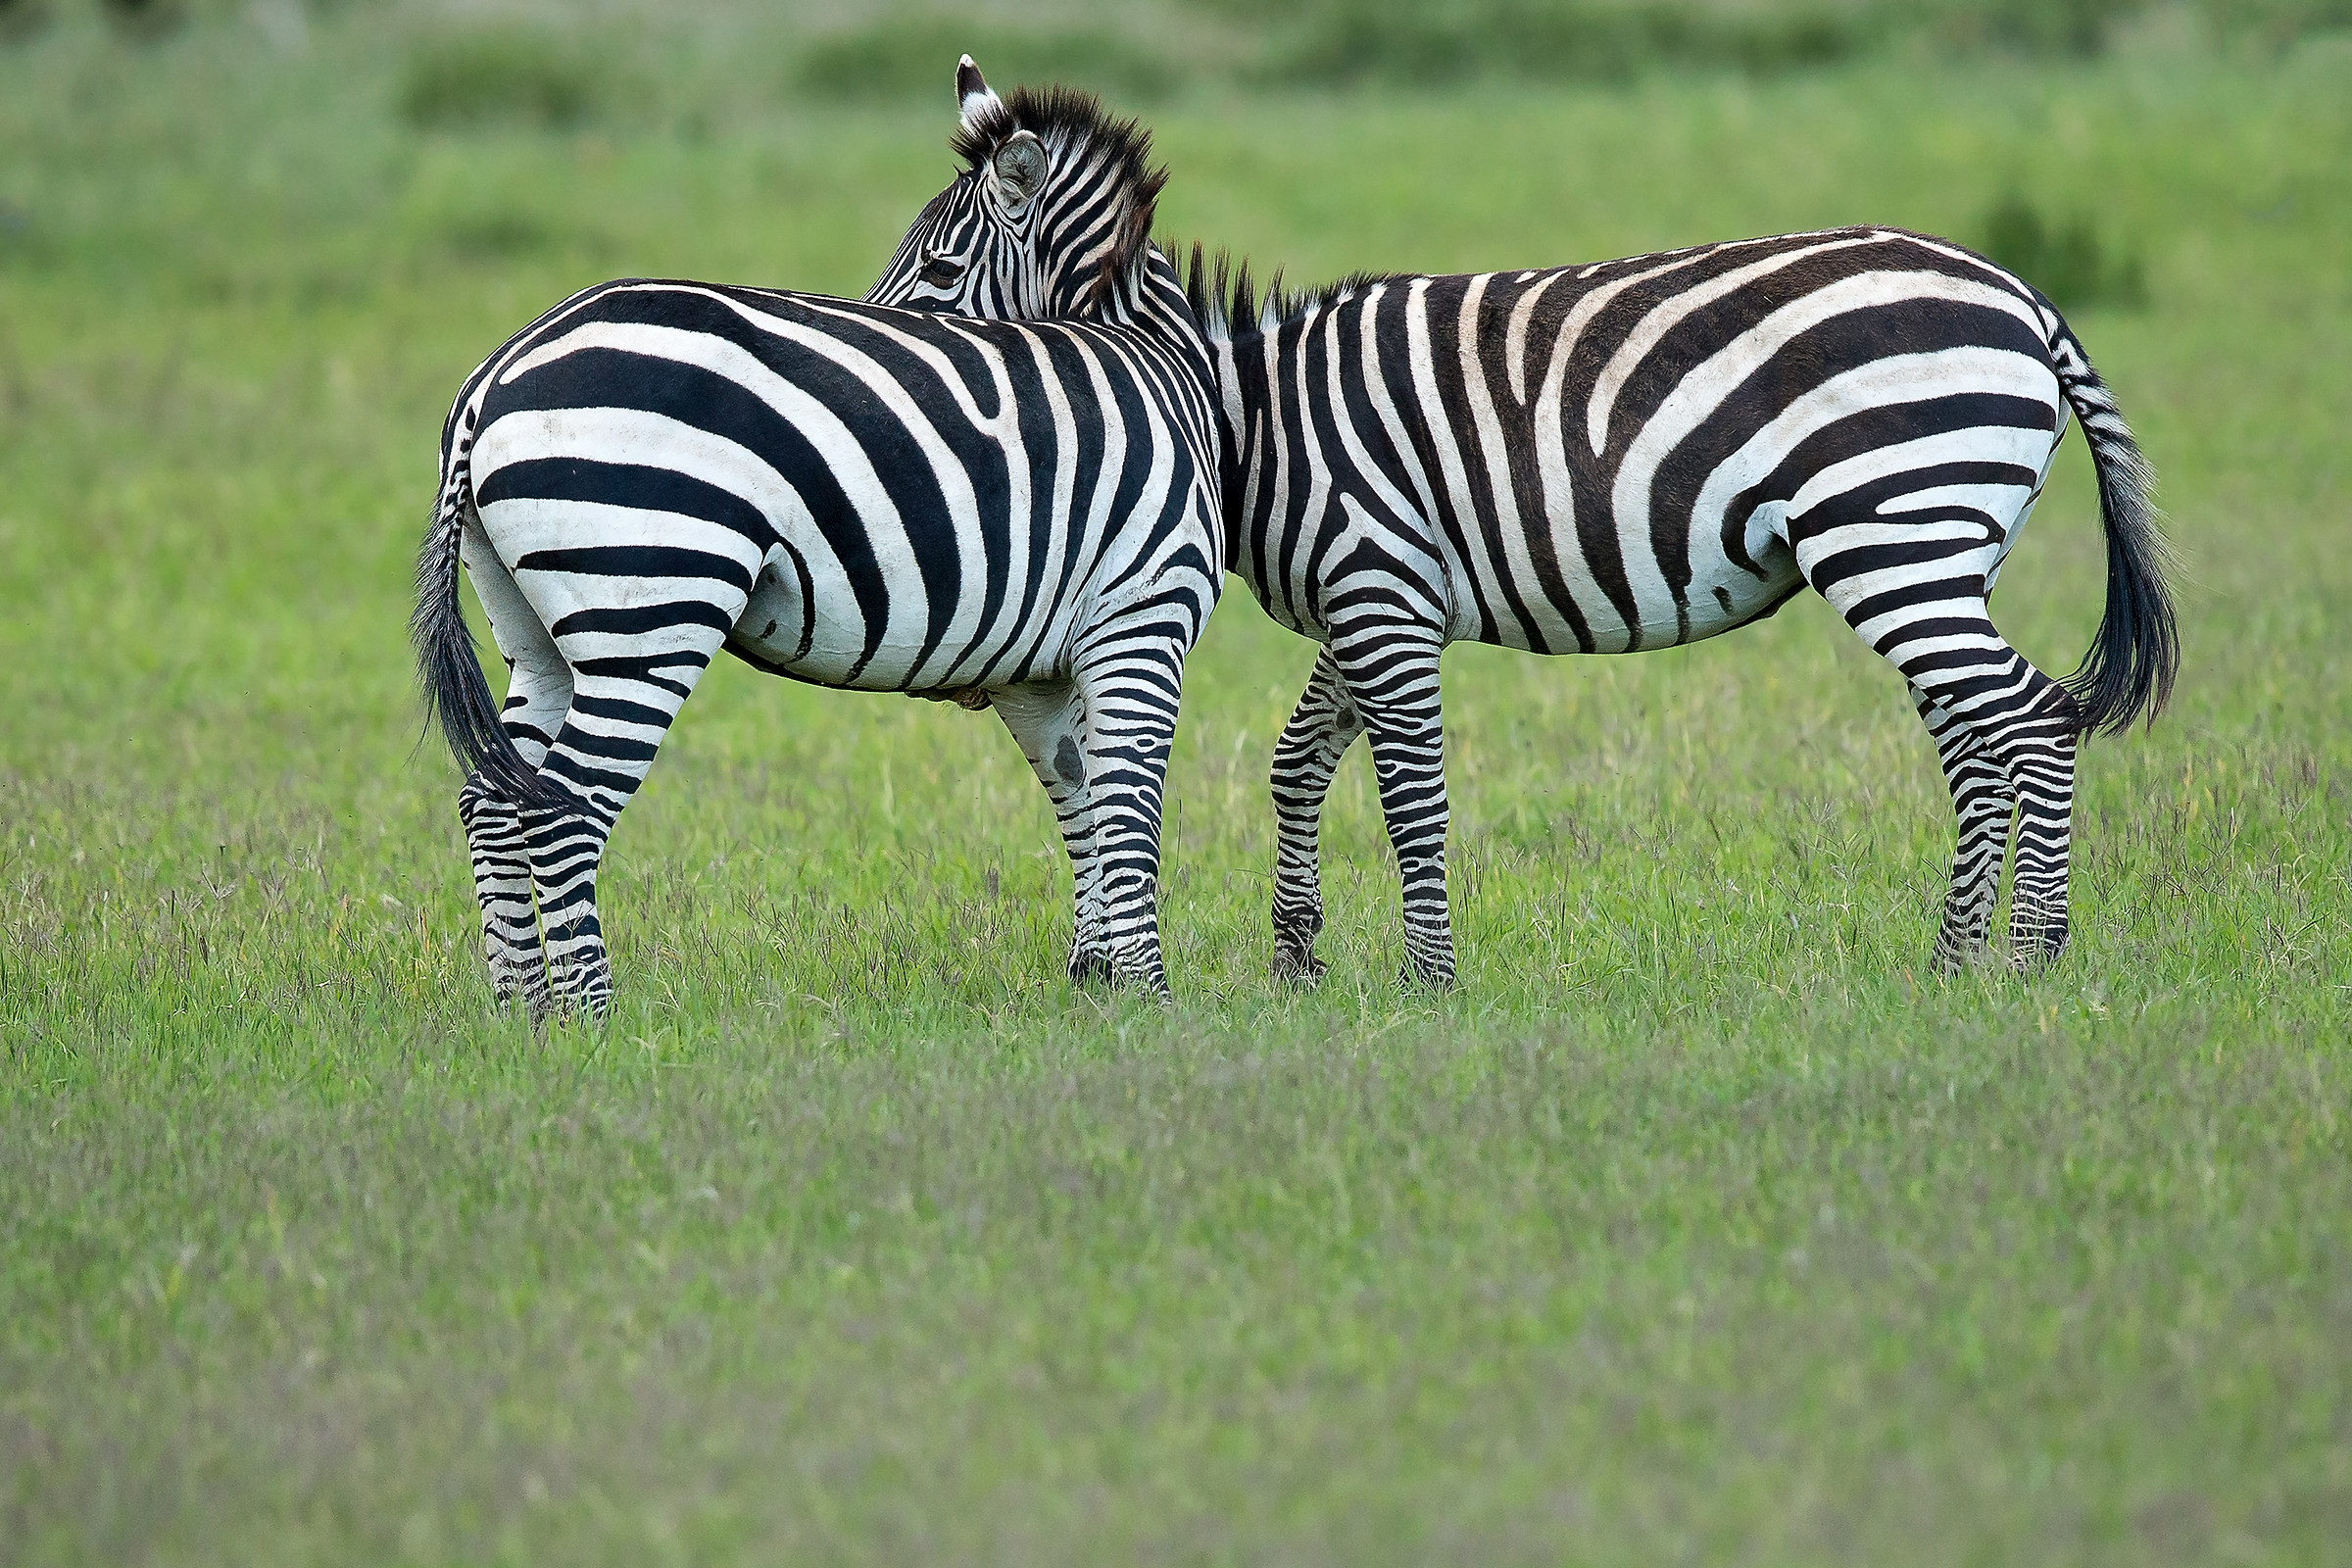 Zebras "Siamese twins"...